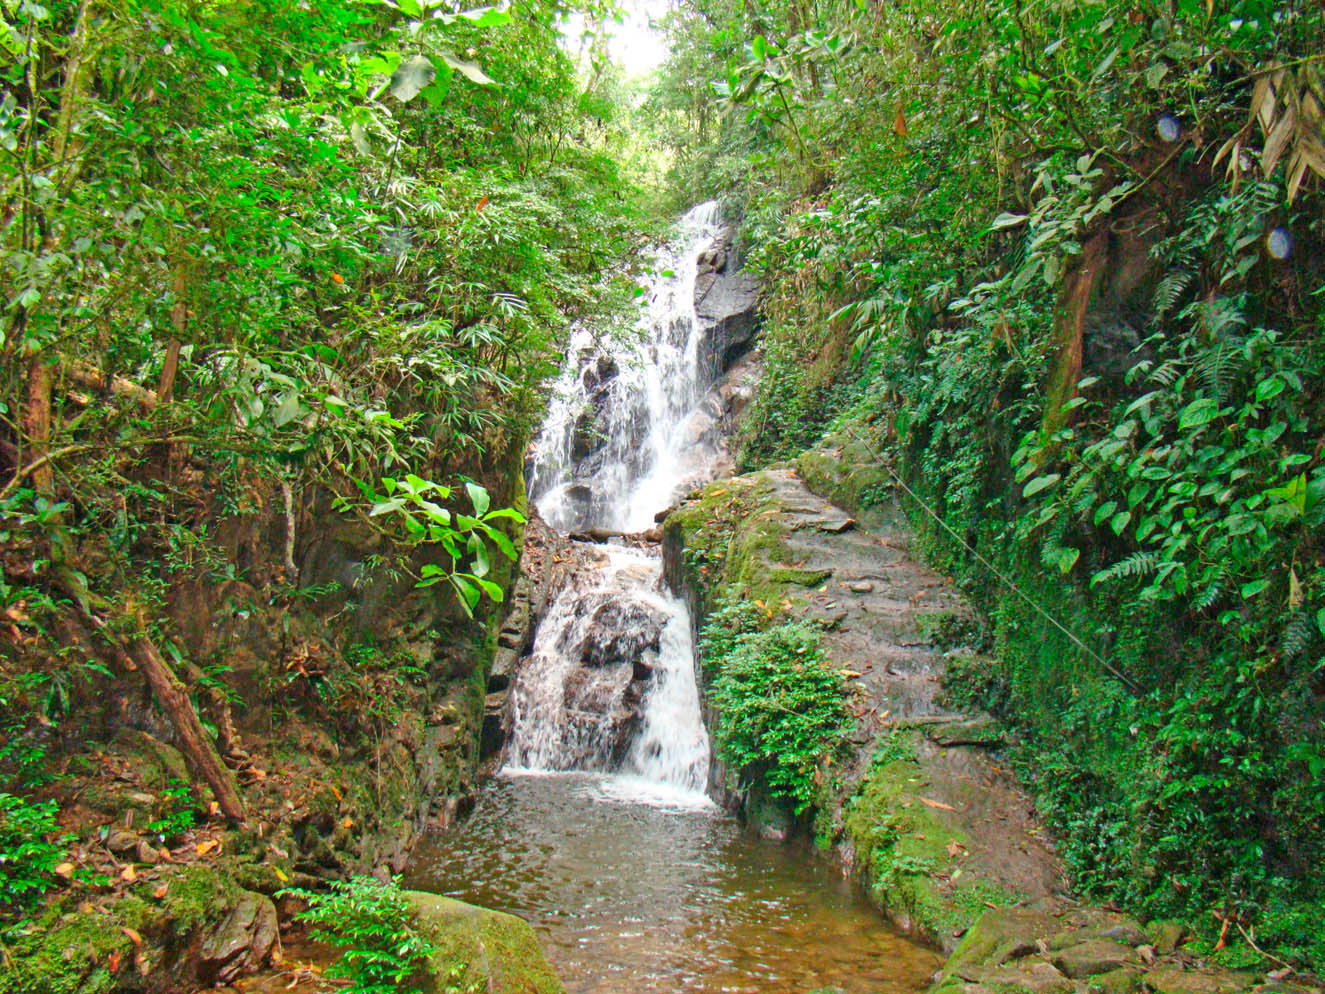 Turismo - Cachoeiras do Santuário - Pousada Rio Minas - Visconde de Mauá-RJ